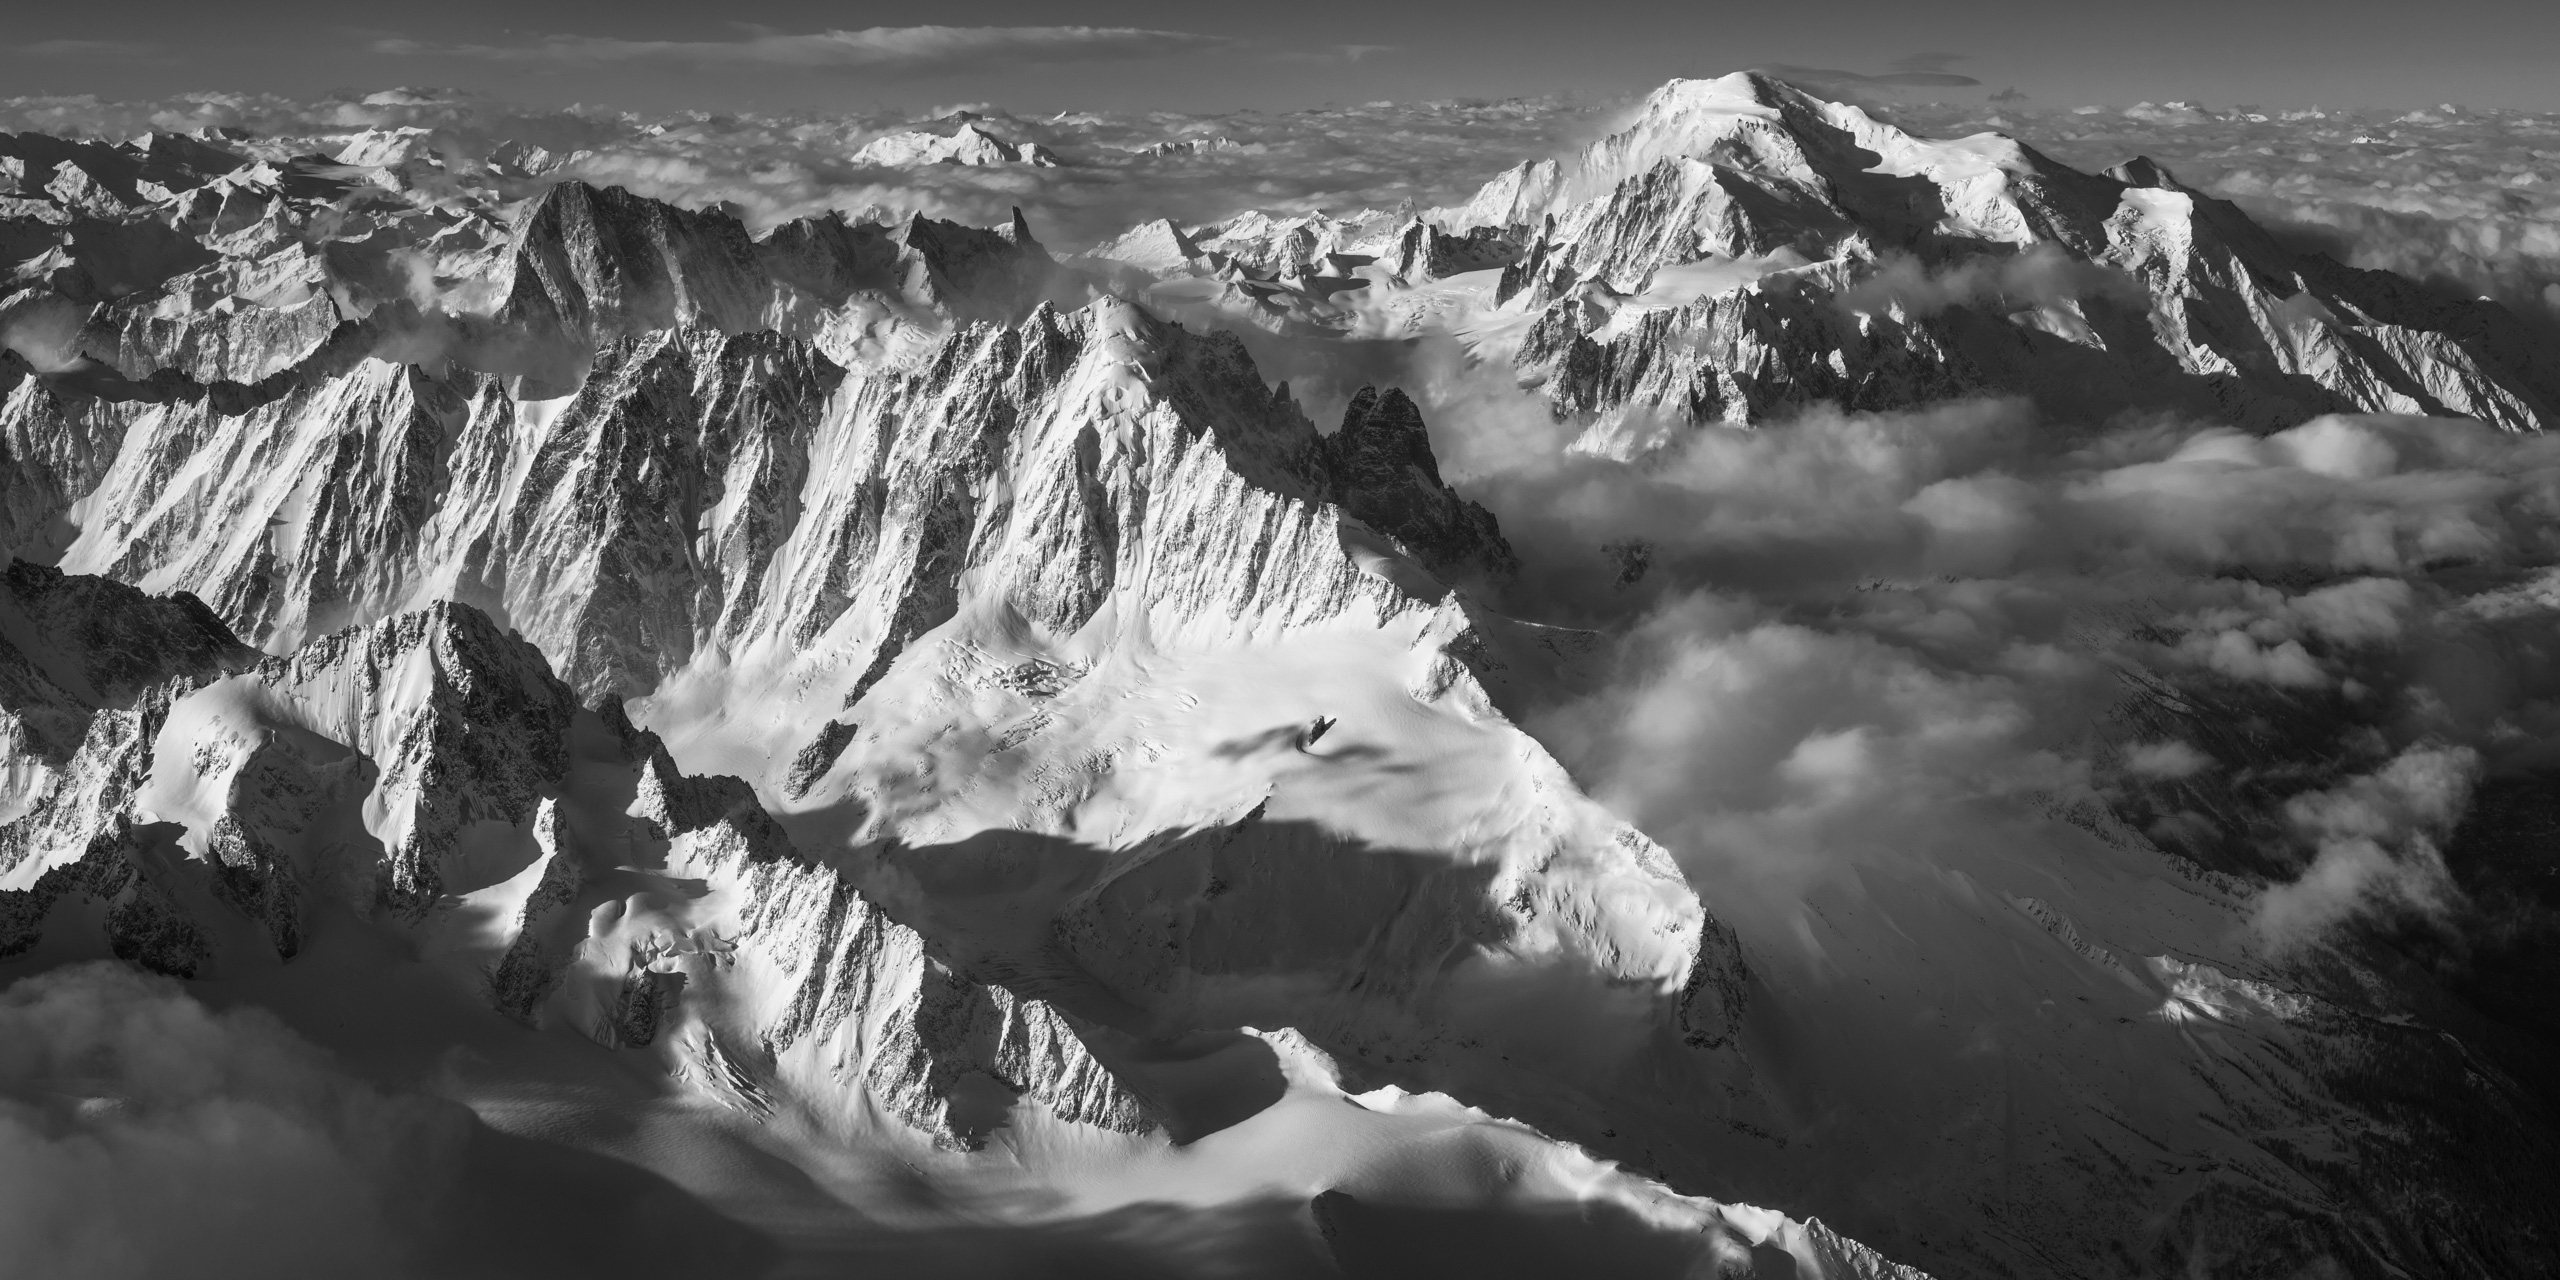 Mont Blanc Massiv - mont blanc photo -chamonix - panorama mont blanc massif - mont blanc helicopter photo